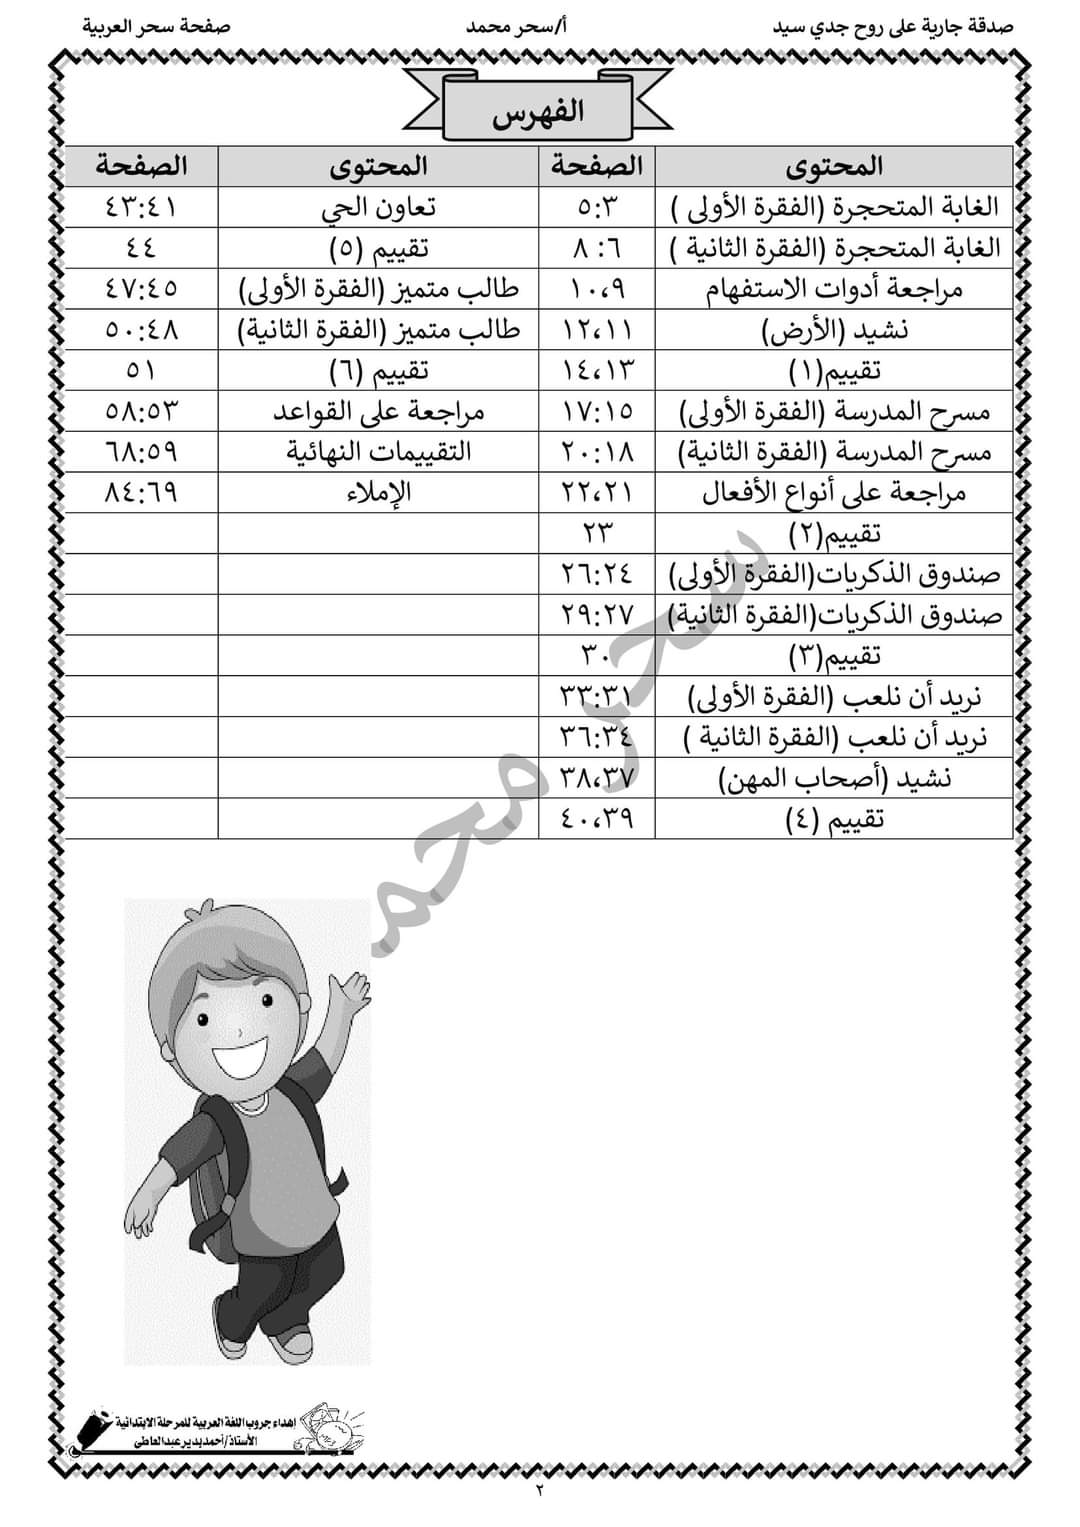 تحميل بوكليت عربي الصف الثالث الابتدائي الترم الثاني - بوكليت عربي تالتة ابتدائي